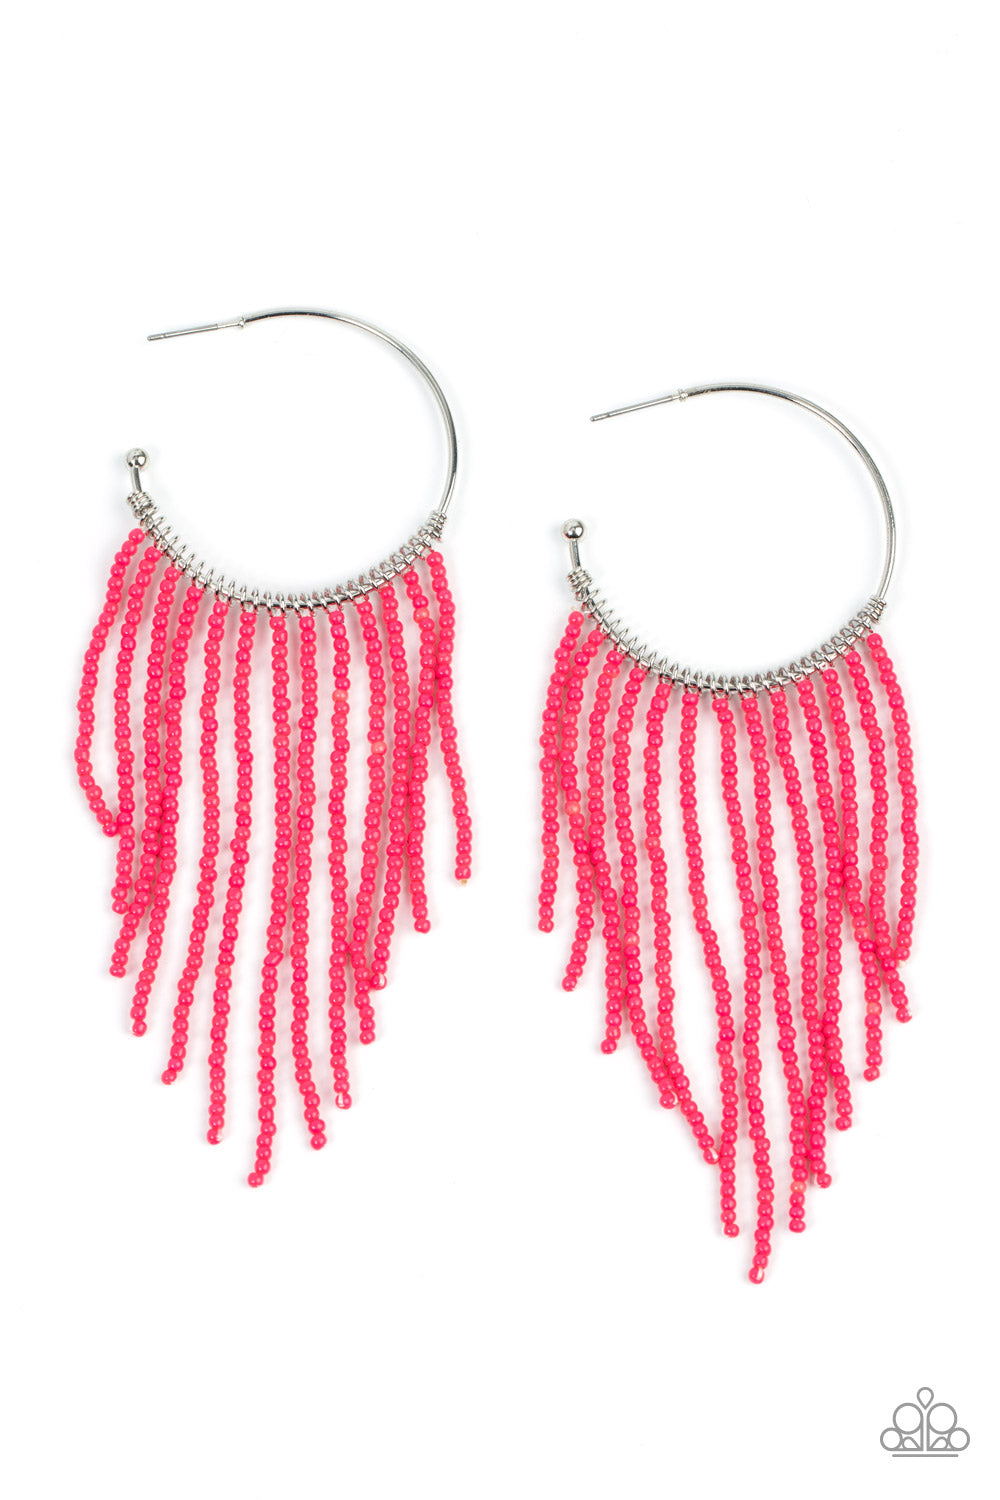 Saguaro Breeze - Pink Seed Bead Hoop Earrings - Princess Glam Shop